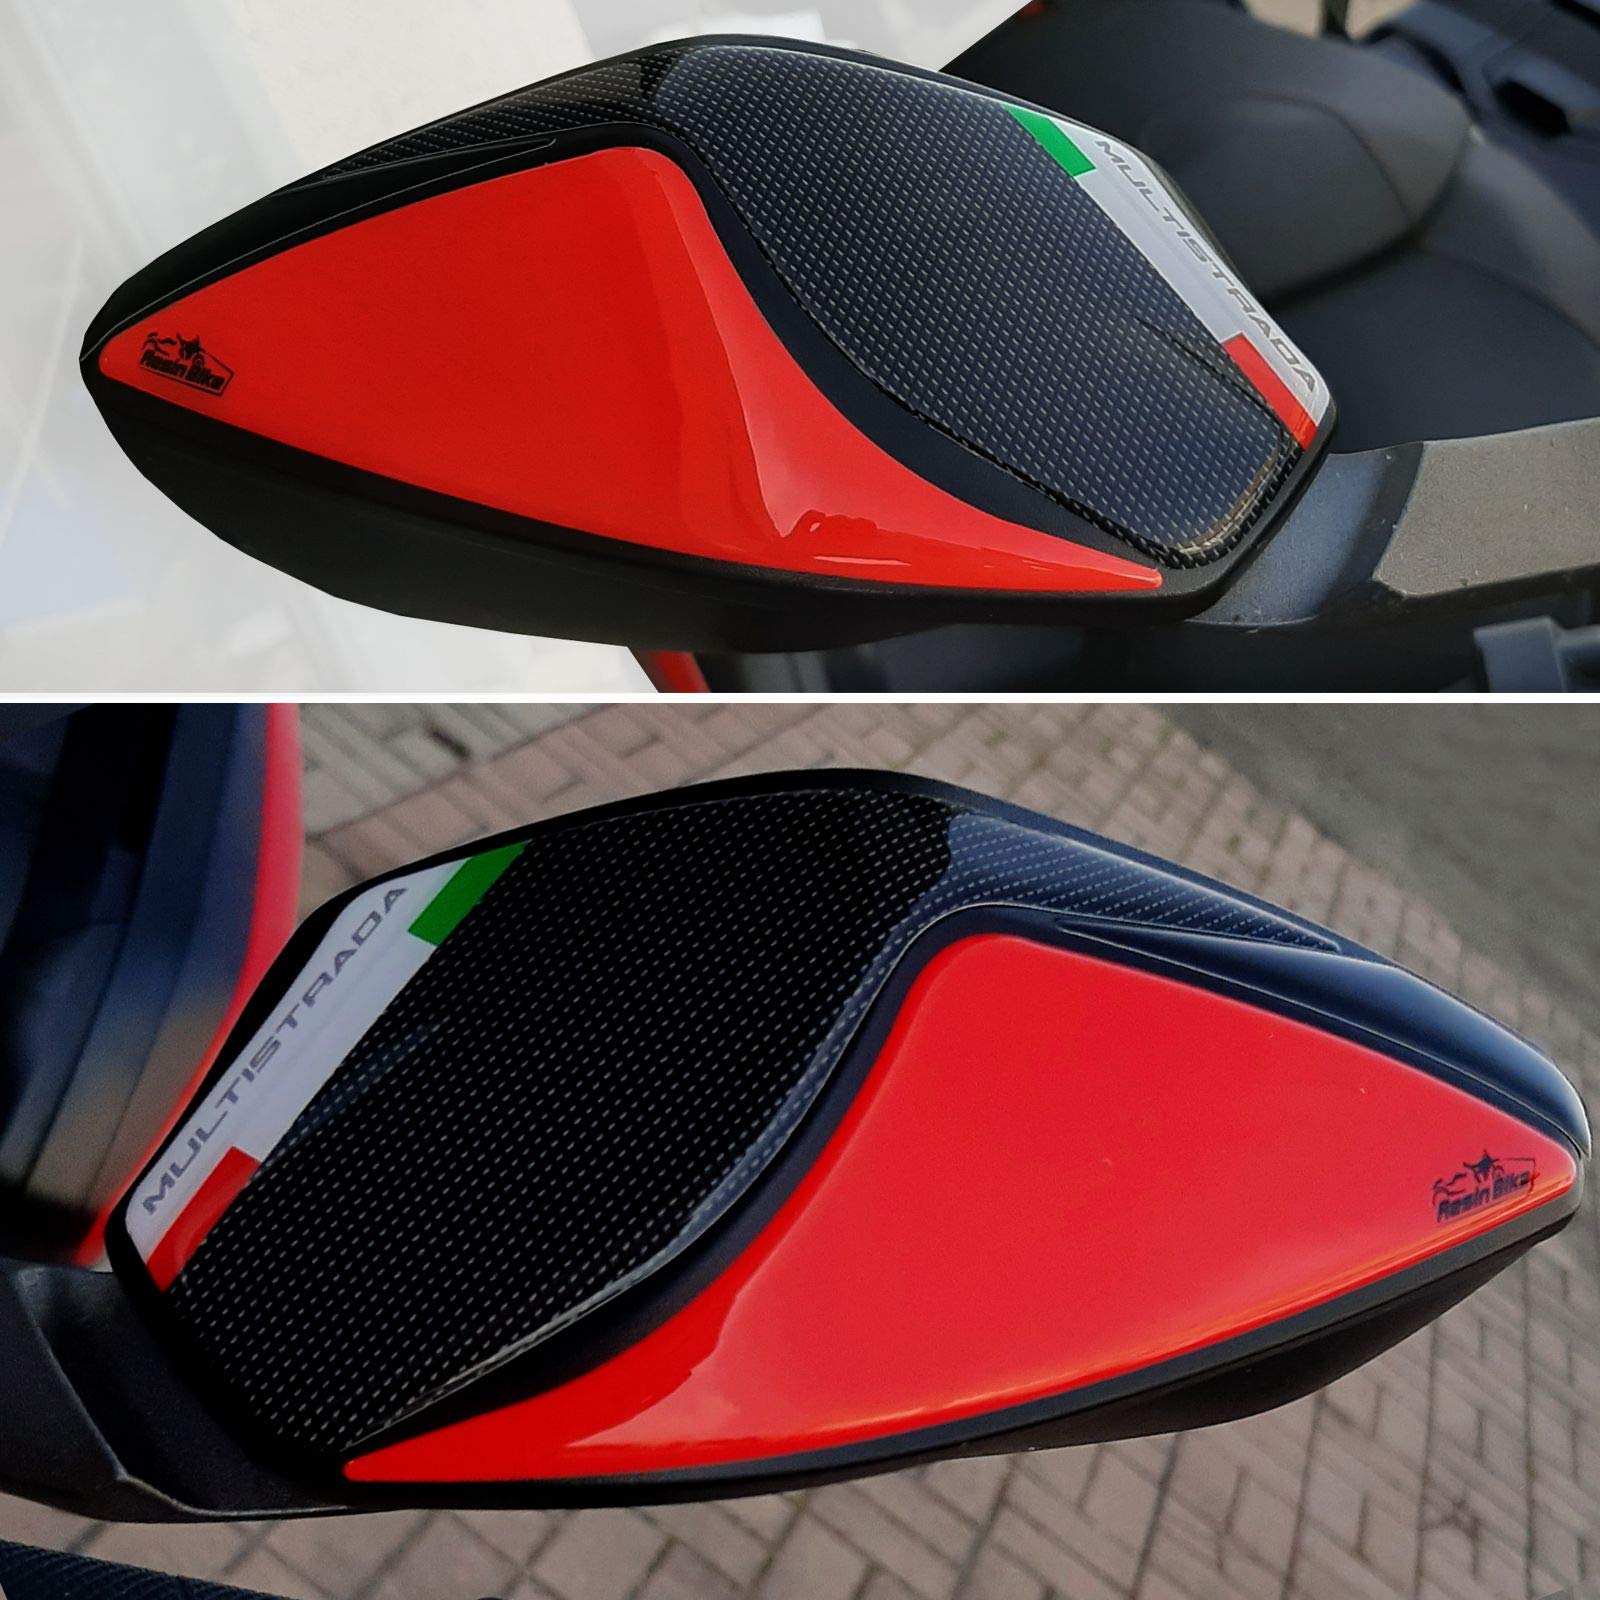 Resin Bike Aufkleber für Motorrad Kompatibel mit Ducati 2018 Multistrada 950 2018-2020. Spiegelschutz vor Stößen und Kratzern. Paar 3D-Harzklebstoff - Stickers - Made in Italy von Resin Bike